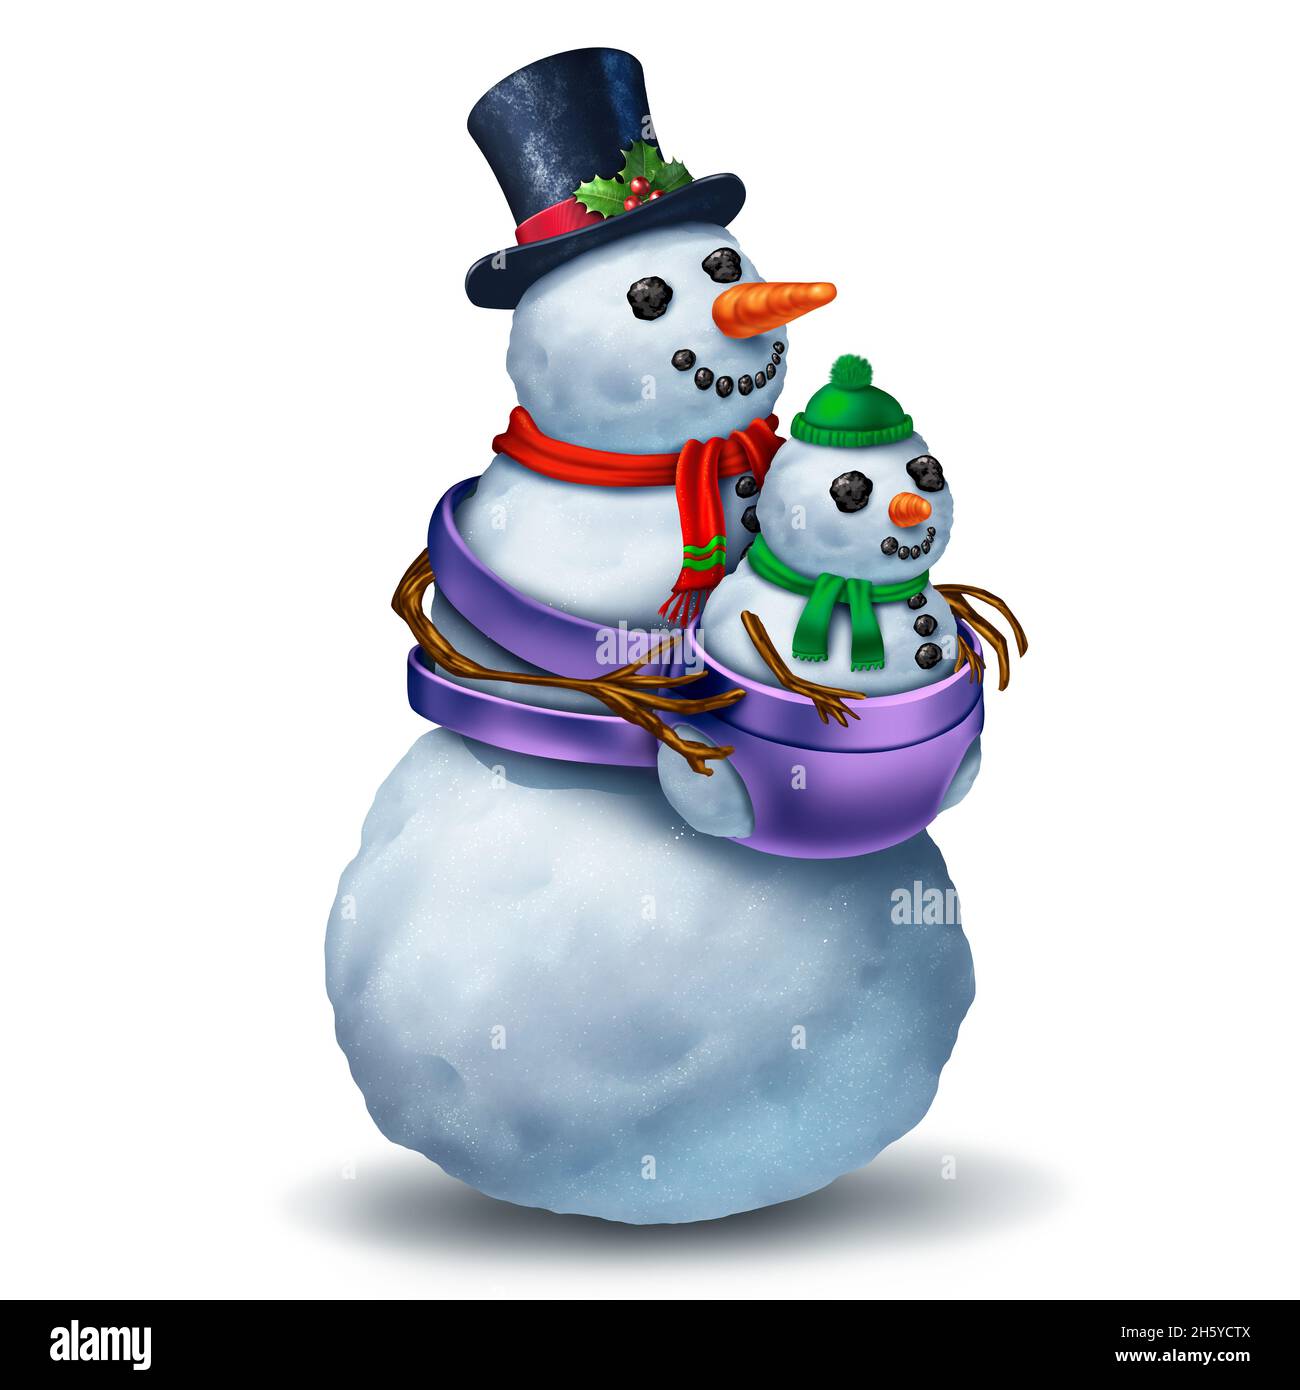 Drôle de parent Snowman personnage comme un parent prenant soin d'un bébé comme une fête de famille traditionnelle amusante de salutation d'hiver et de saison festive. Banque D'Images